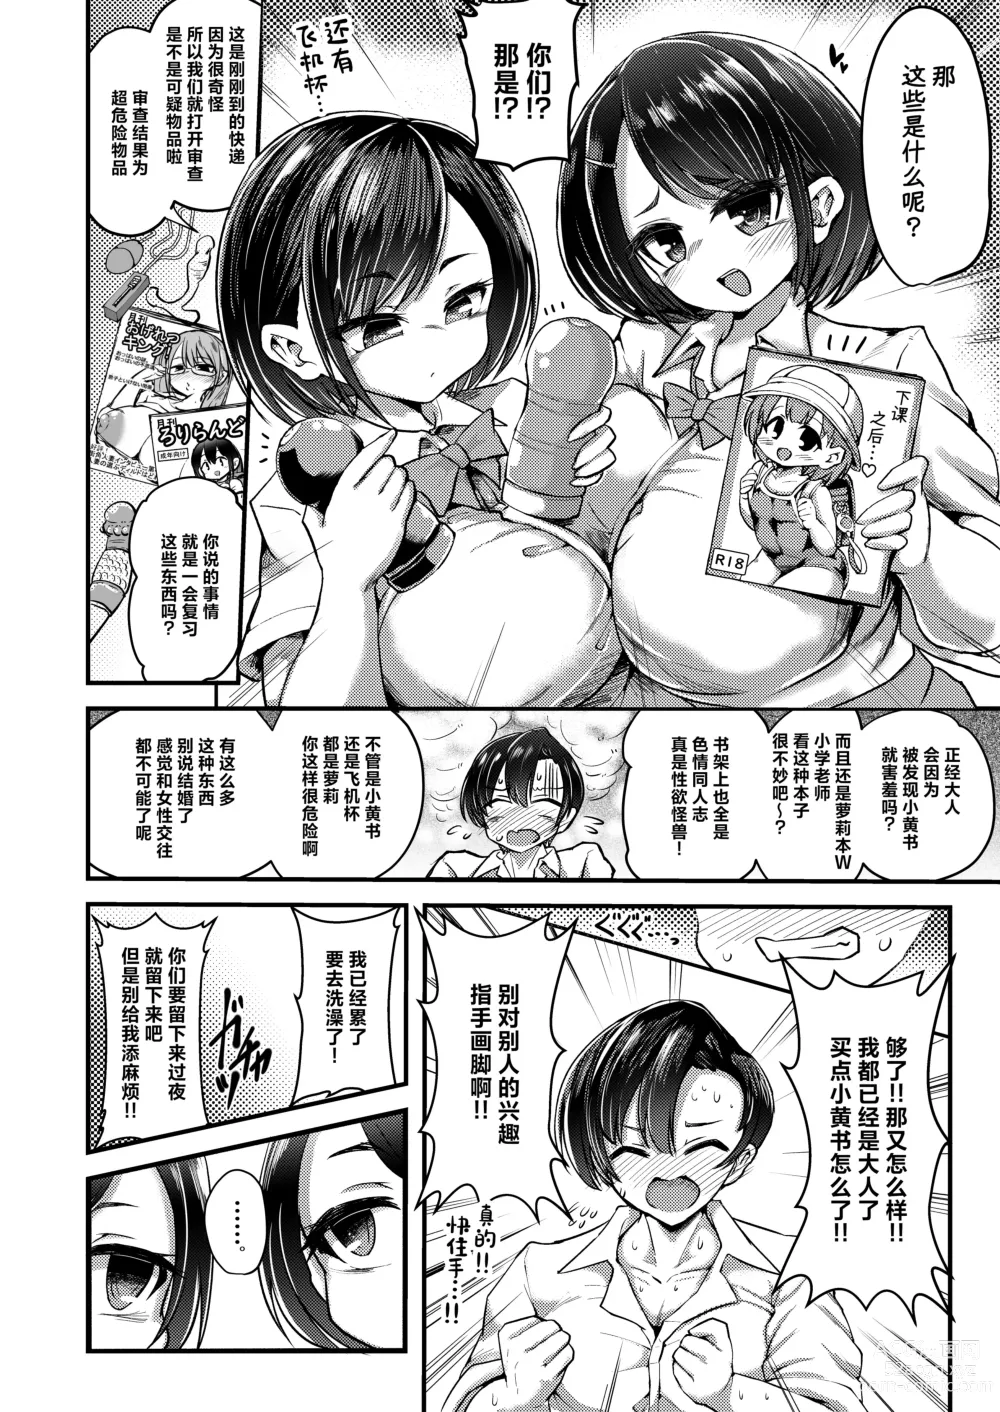 Page 6 of doujinshi Issho ni Asobo